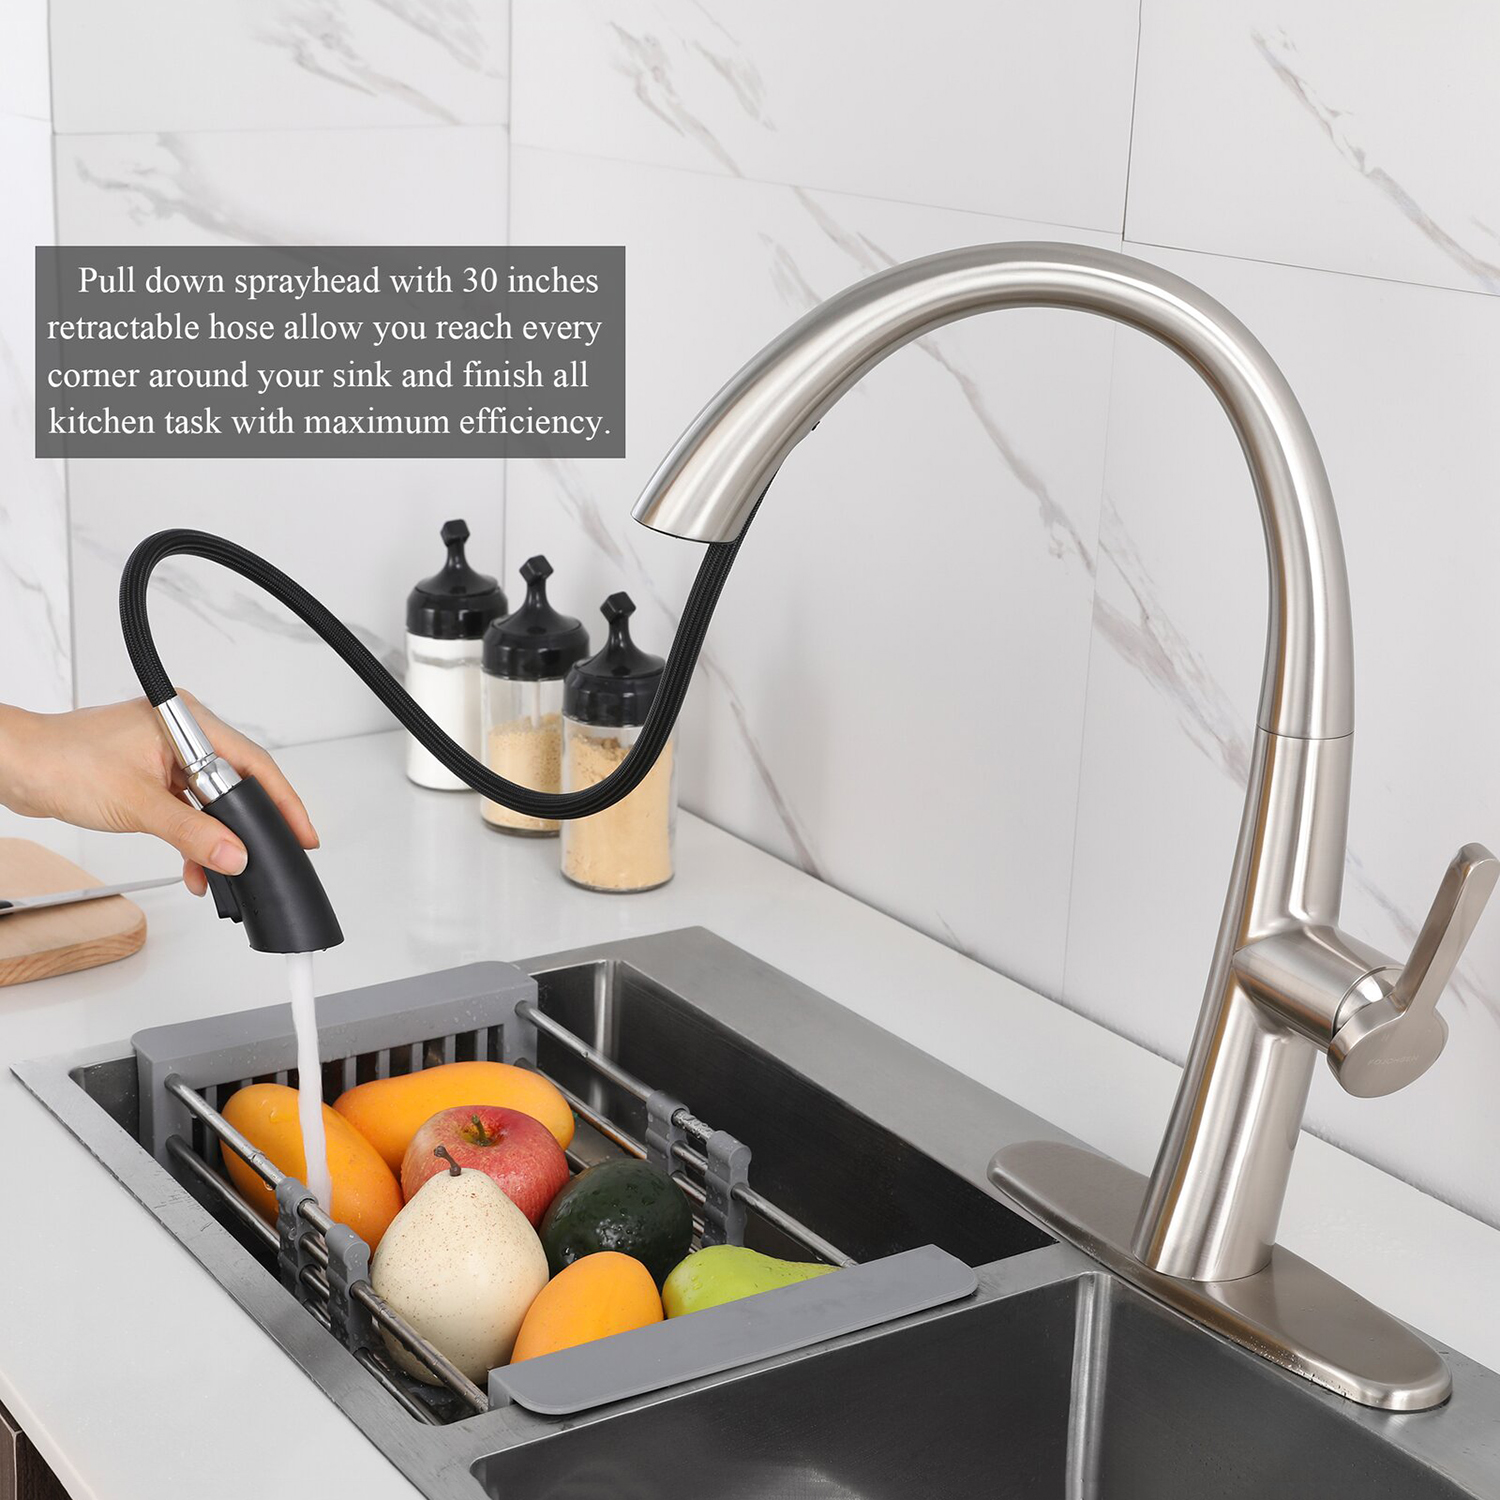 يوفر صنبور المطبخ Aquacubic مع البخاخ القابل للسحب تنظيفًا فعالاً لصنبور حوض المطبخ